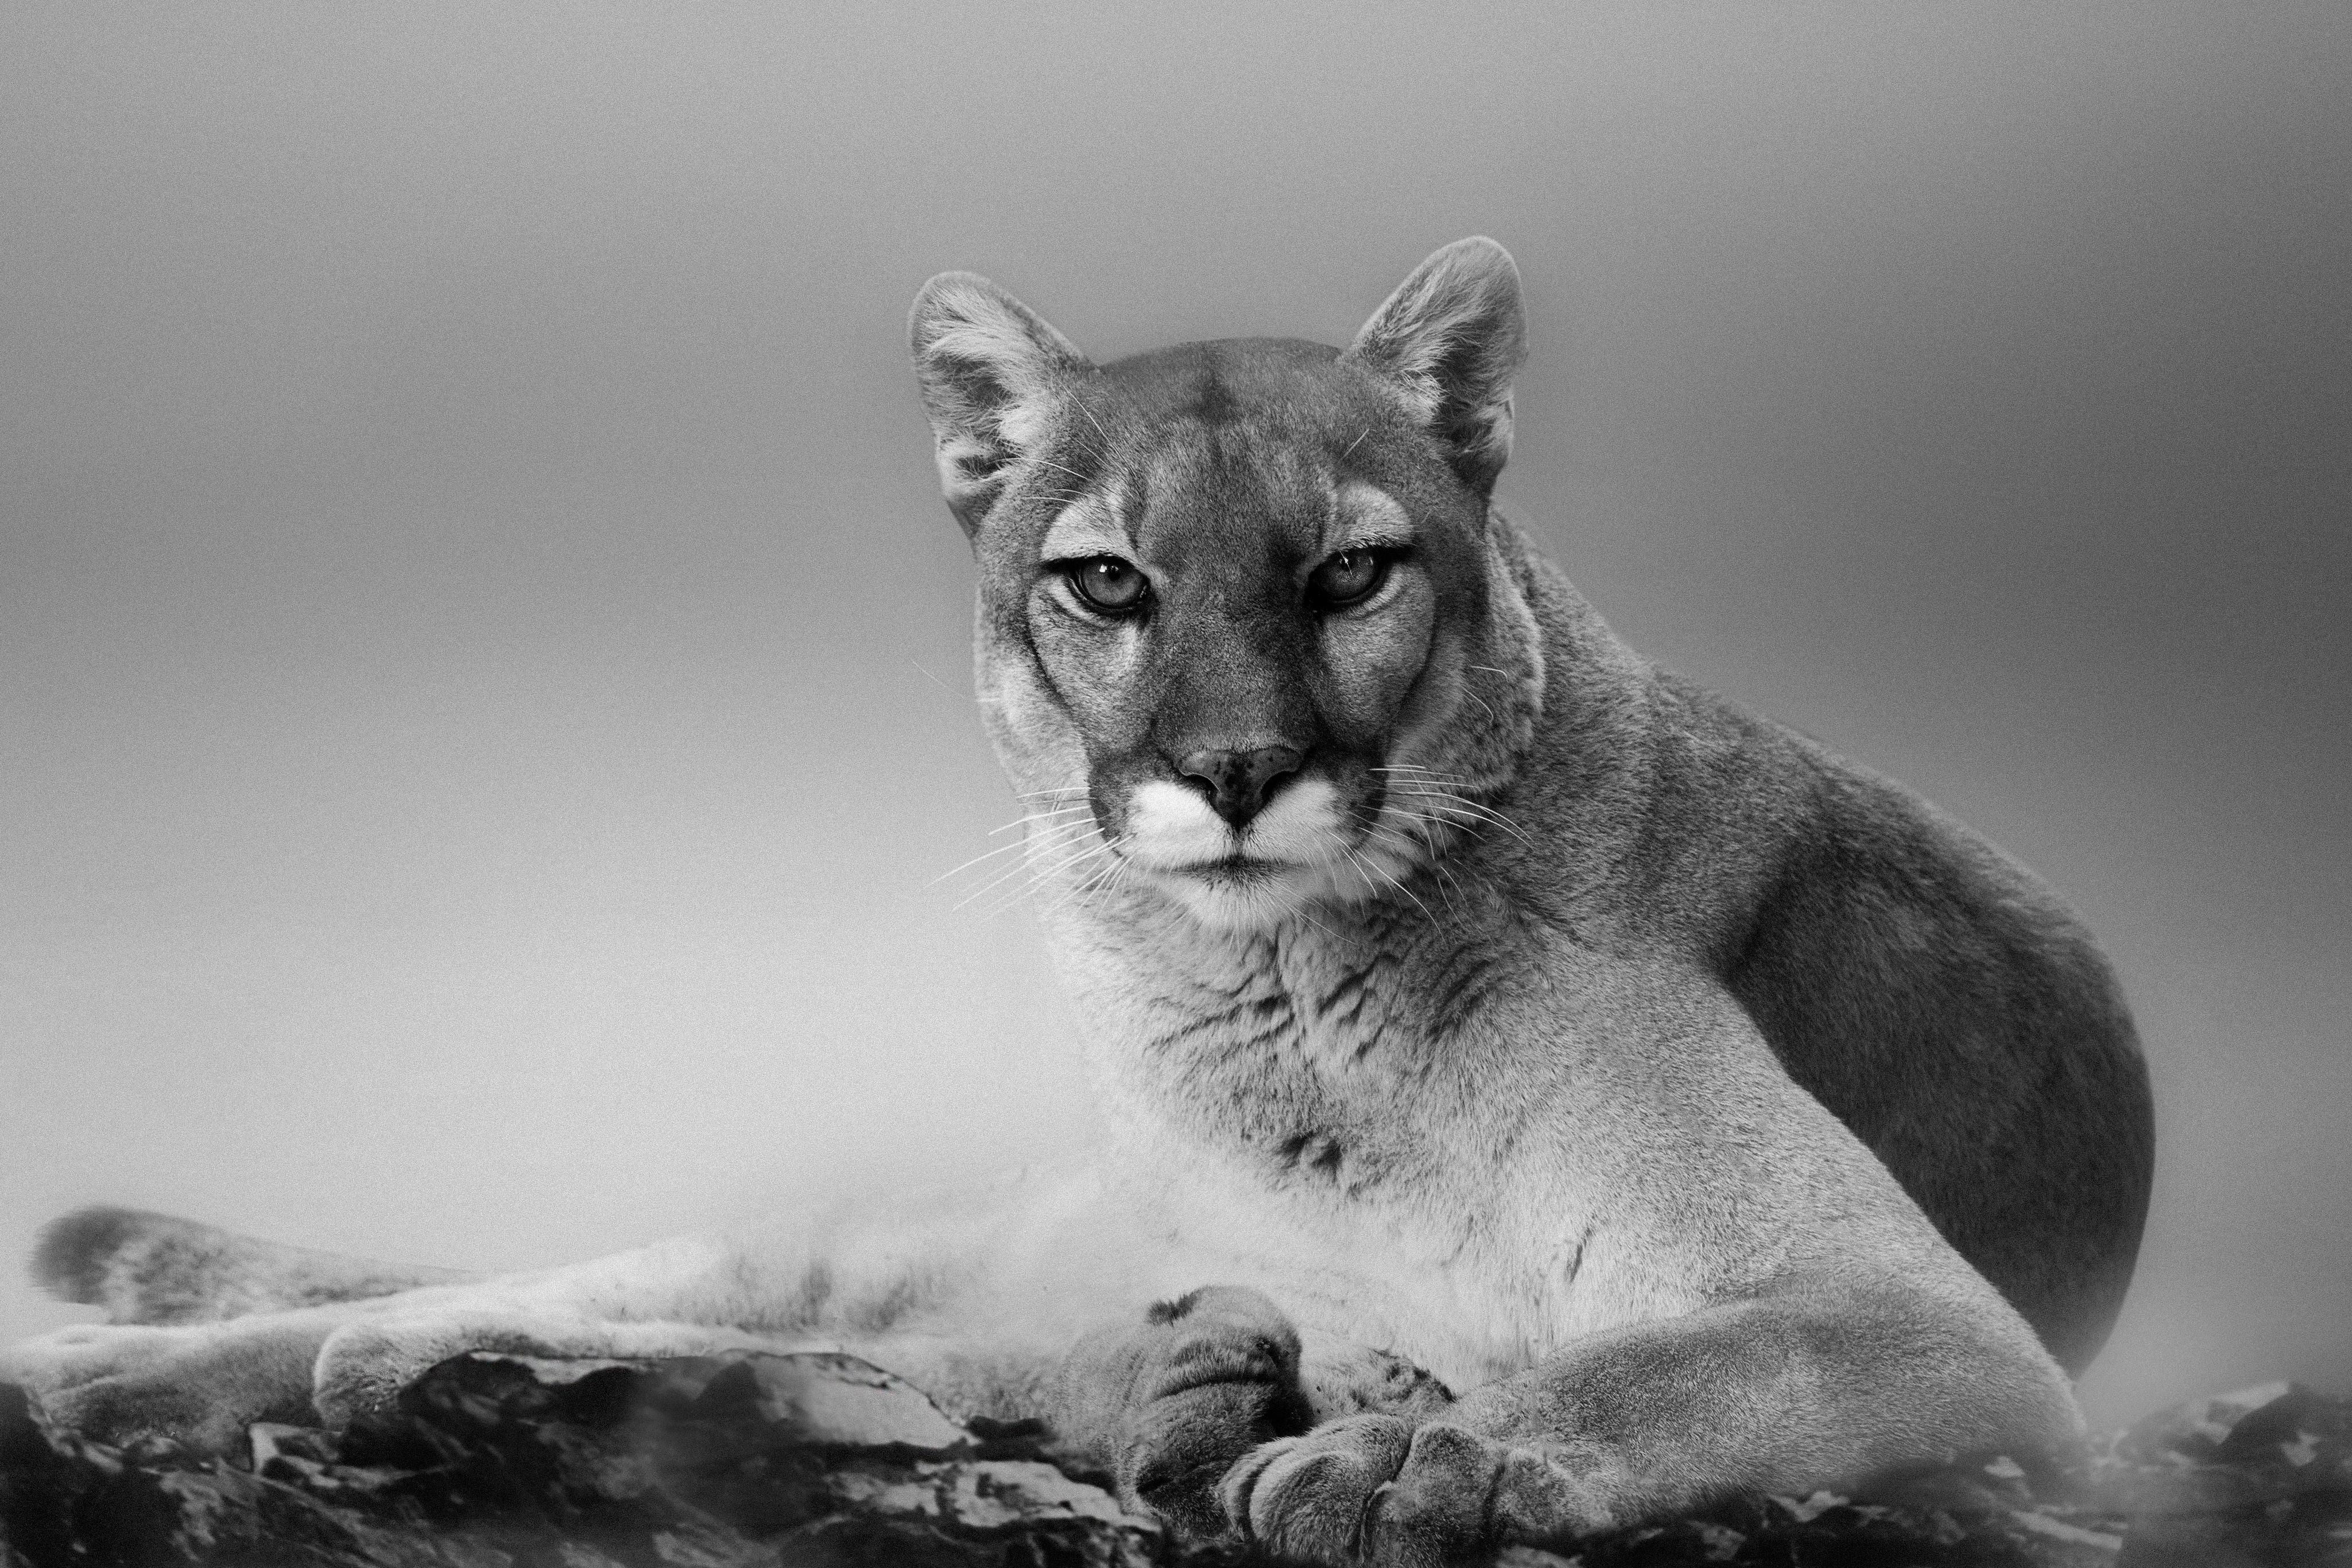 Black and White Photograph Shane Russeck - Impression au Cougar 40x60 - Photographie d'art d'un lion de montagne, Cougar